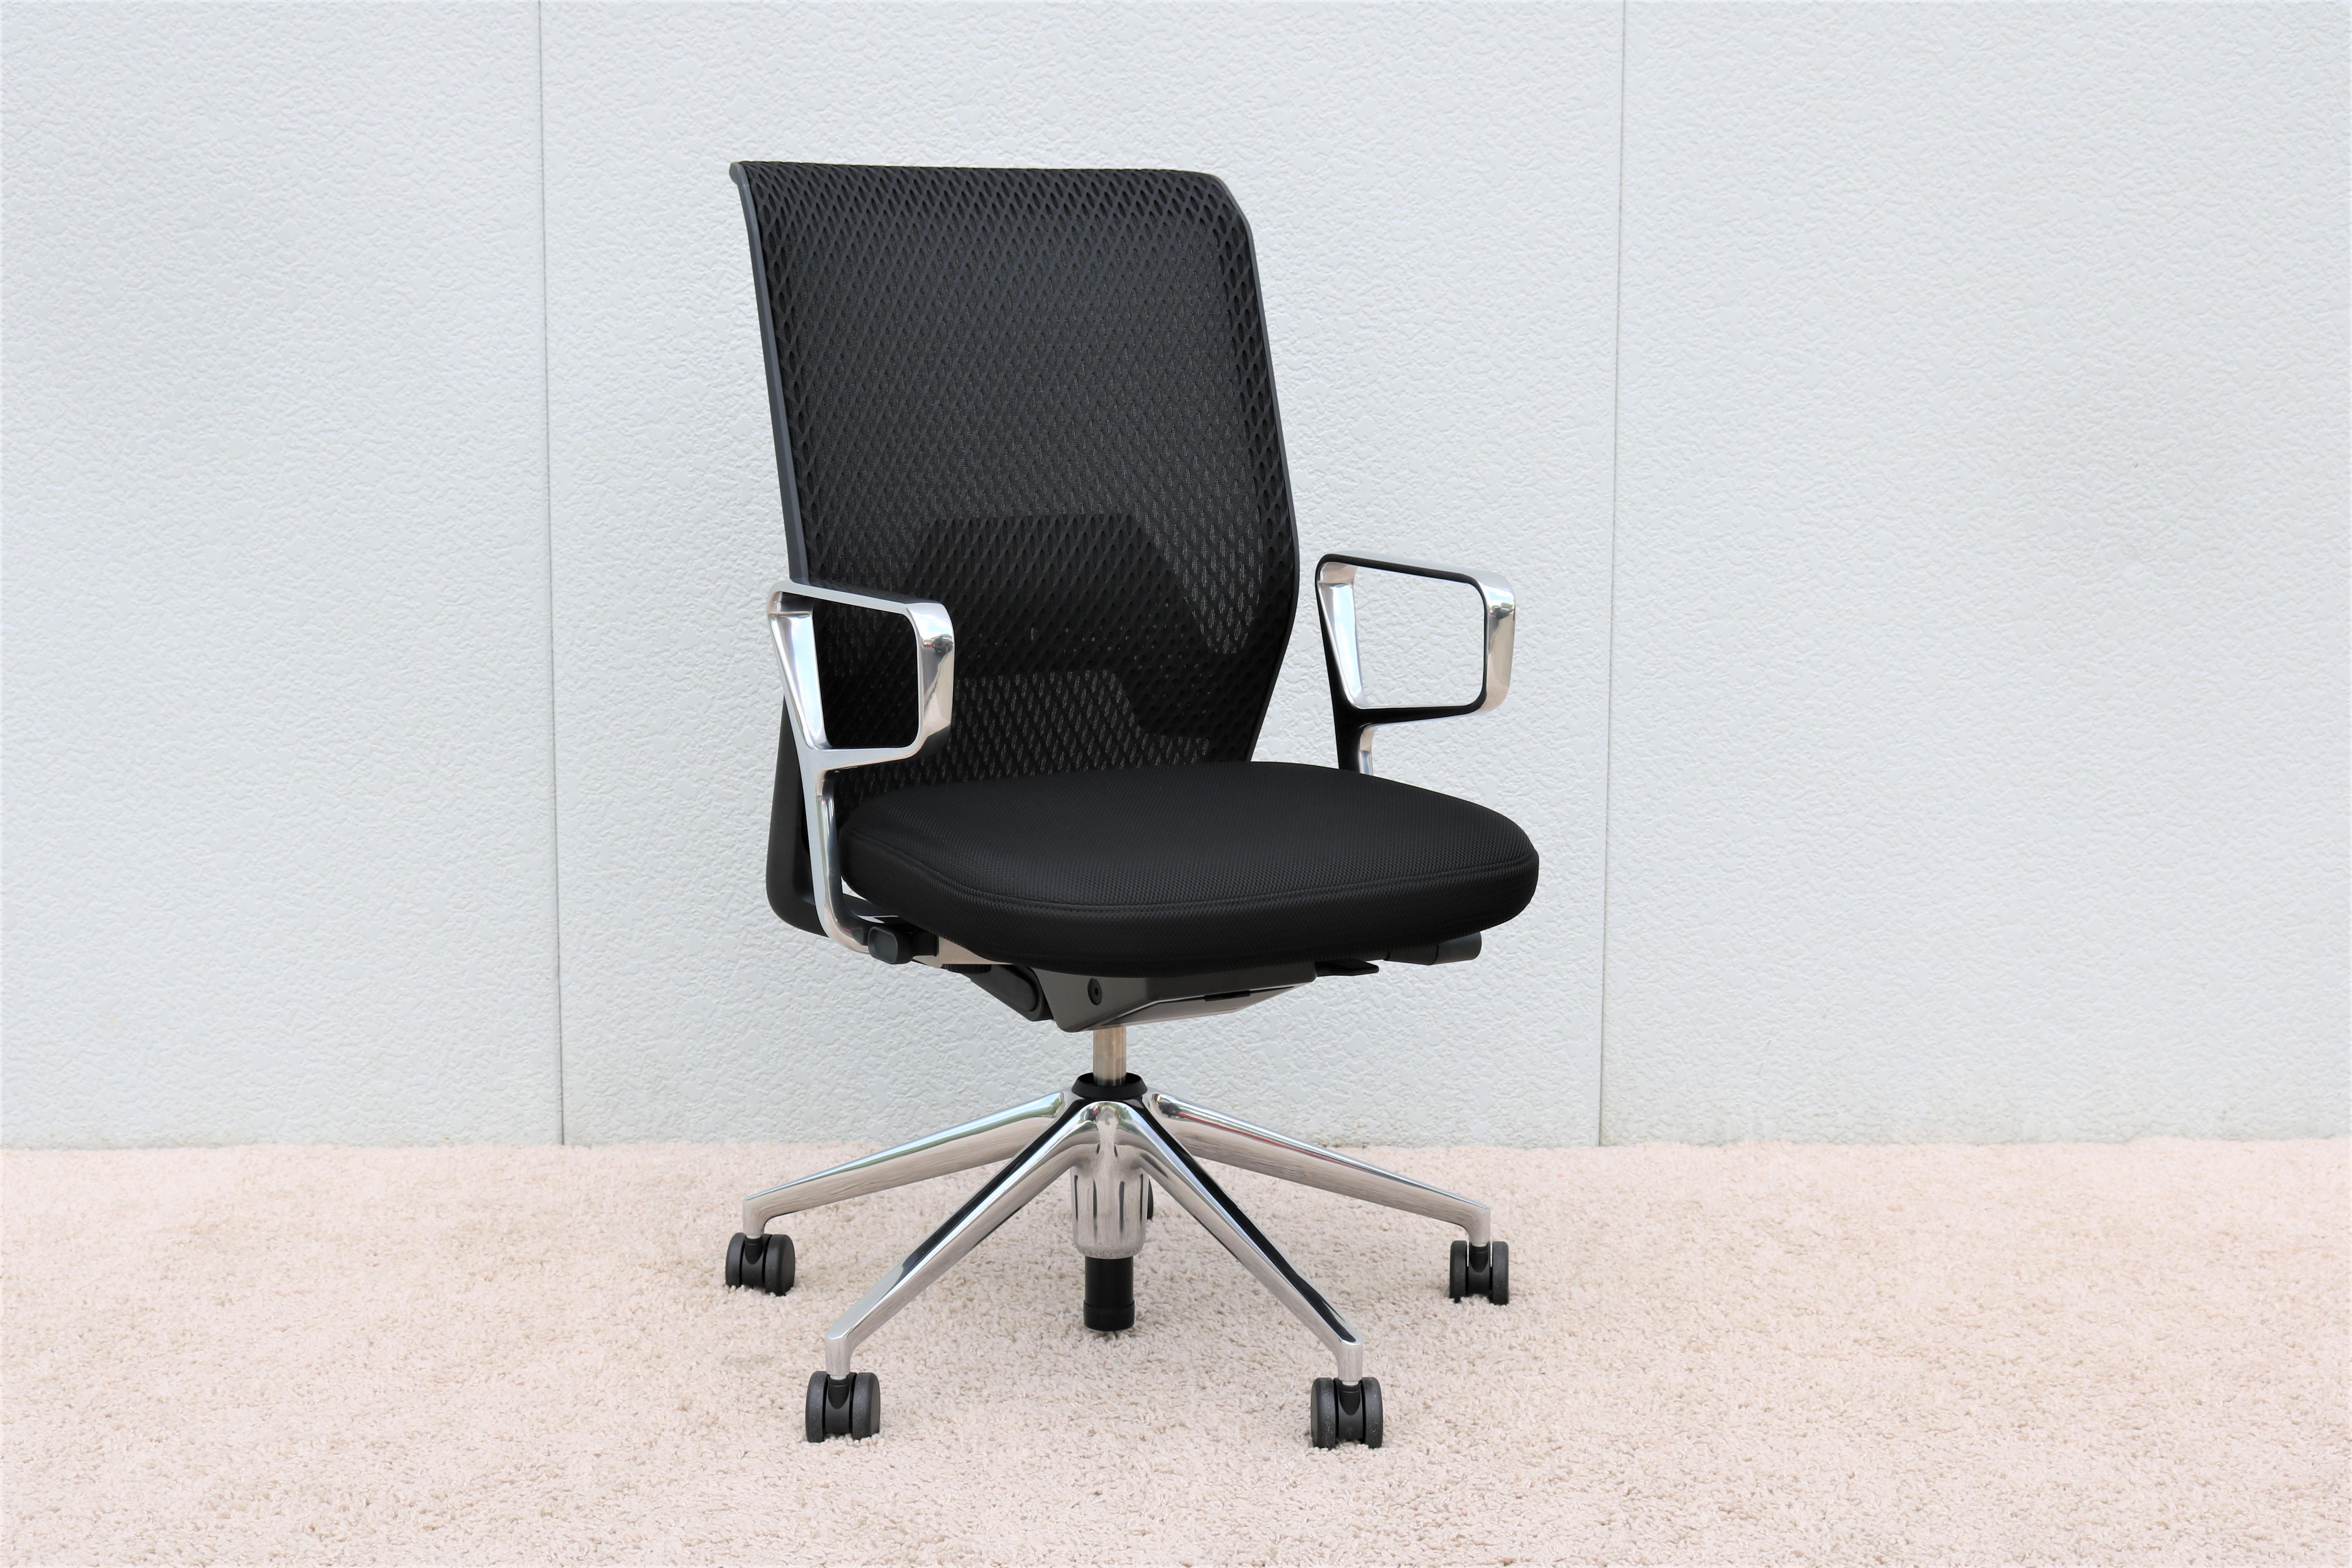 La chaise de bureau ergonomique ID mesh conçue par Antonio Citterio pour Vitra allie avec succès confort, technologie et élégance. 
L'assise est souple et le dossier est en maille qui permet à l'air de circuler et offre un confort durable. 

S'il